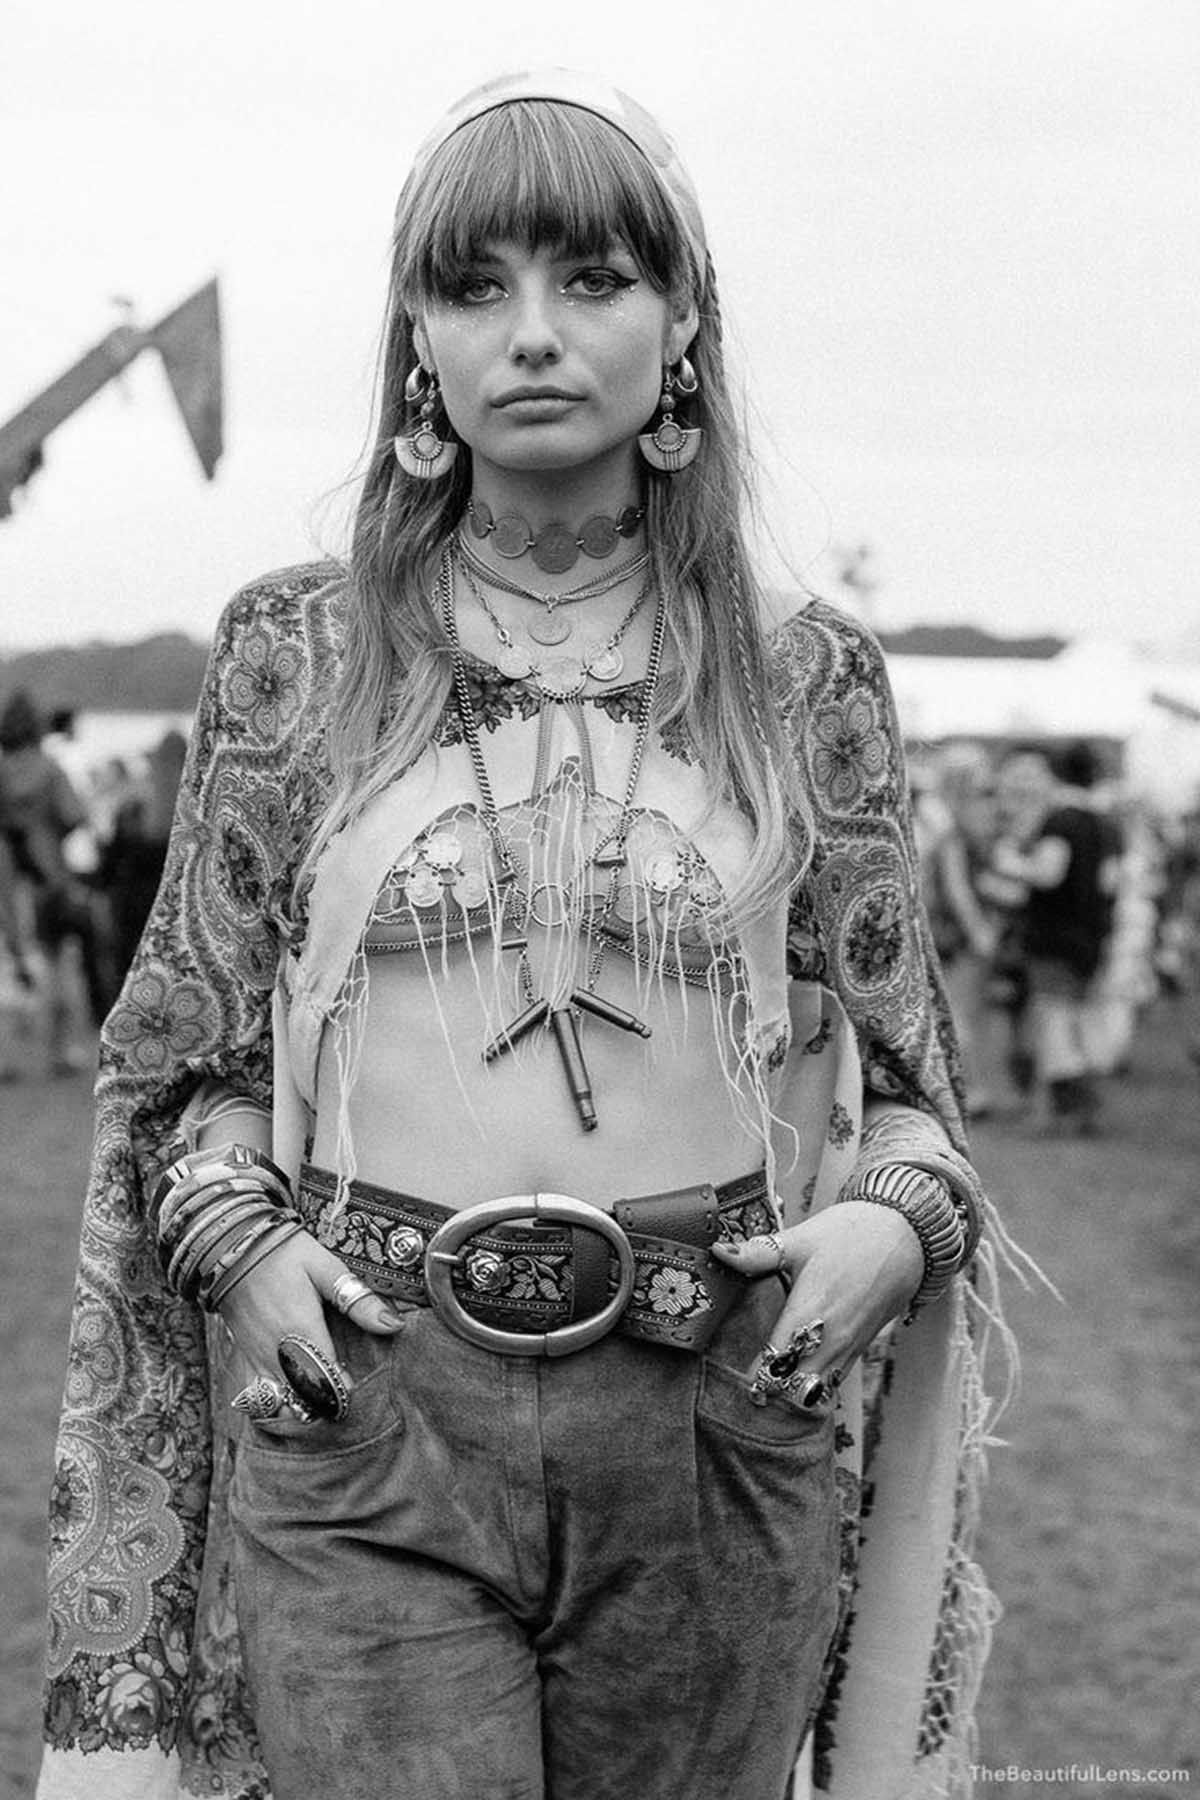 Fotos impressionantes retratam a moda rebelde de Woodstock em 1969 18